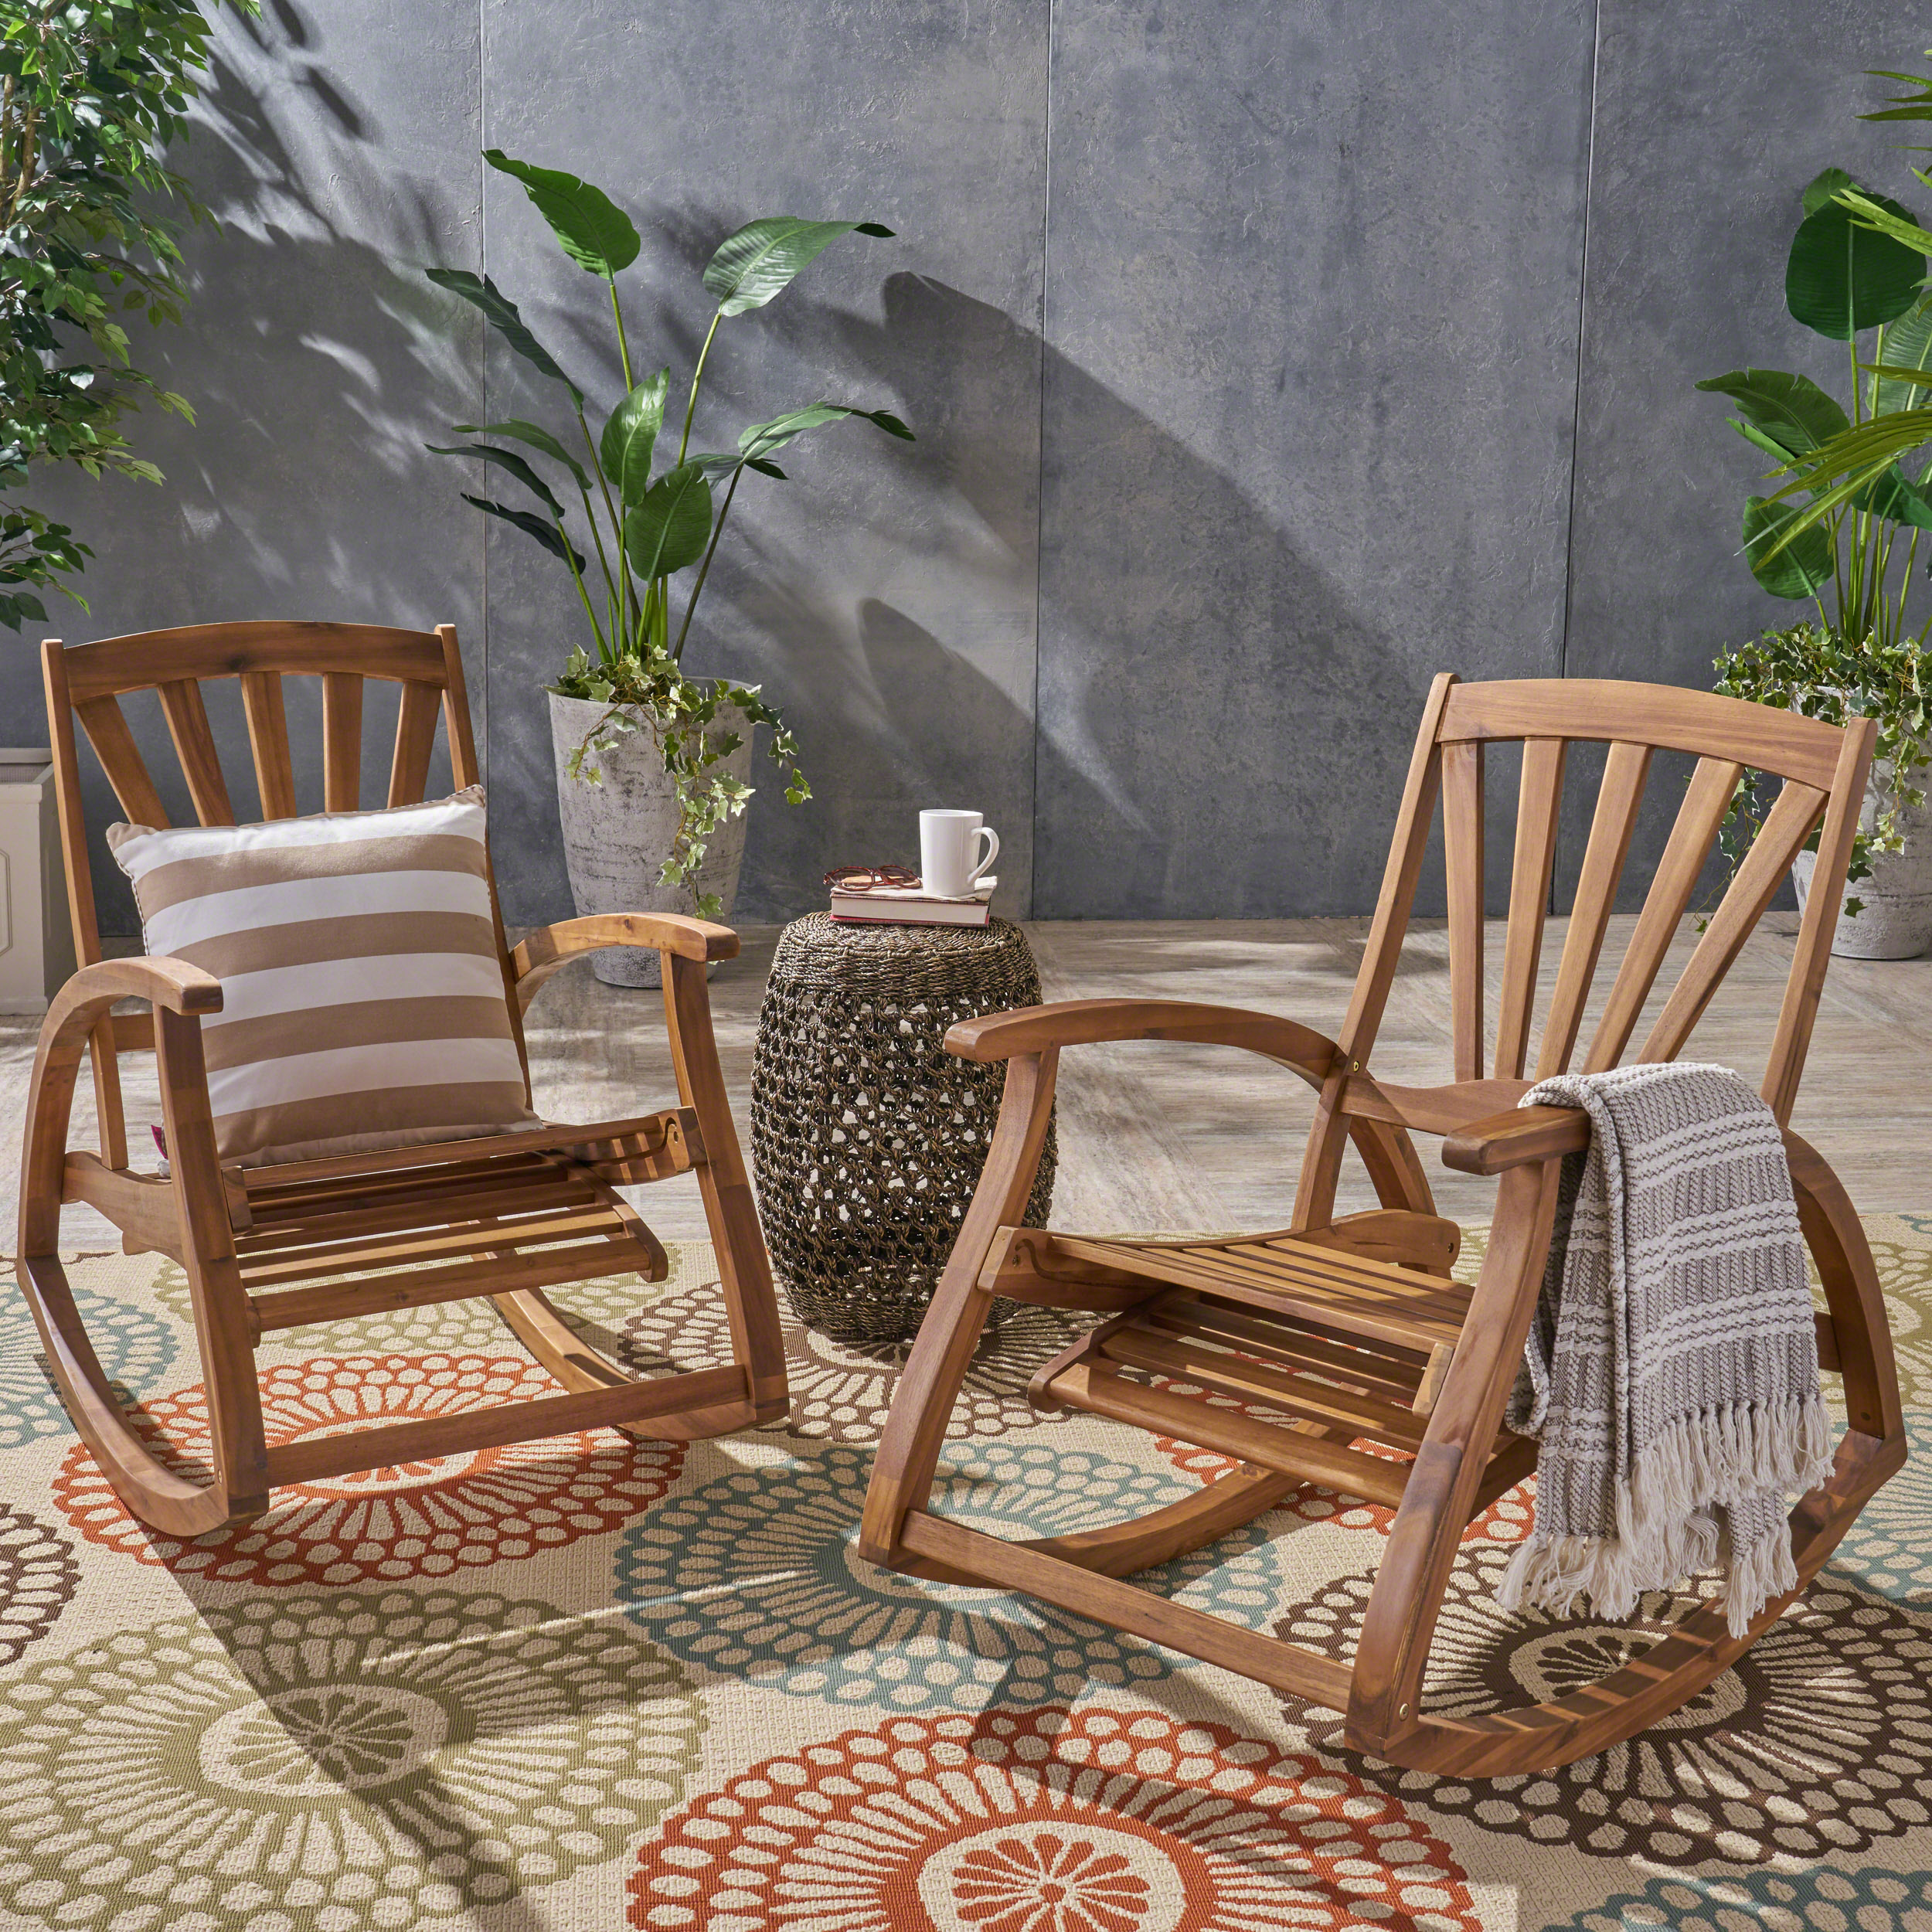 Kaya Outdoor Reclining Acacia Wood Rocking Chairs, Set of 2, Teak - image 1 of 7